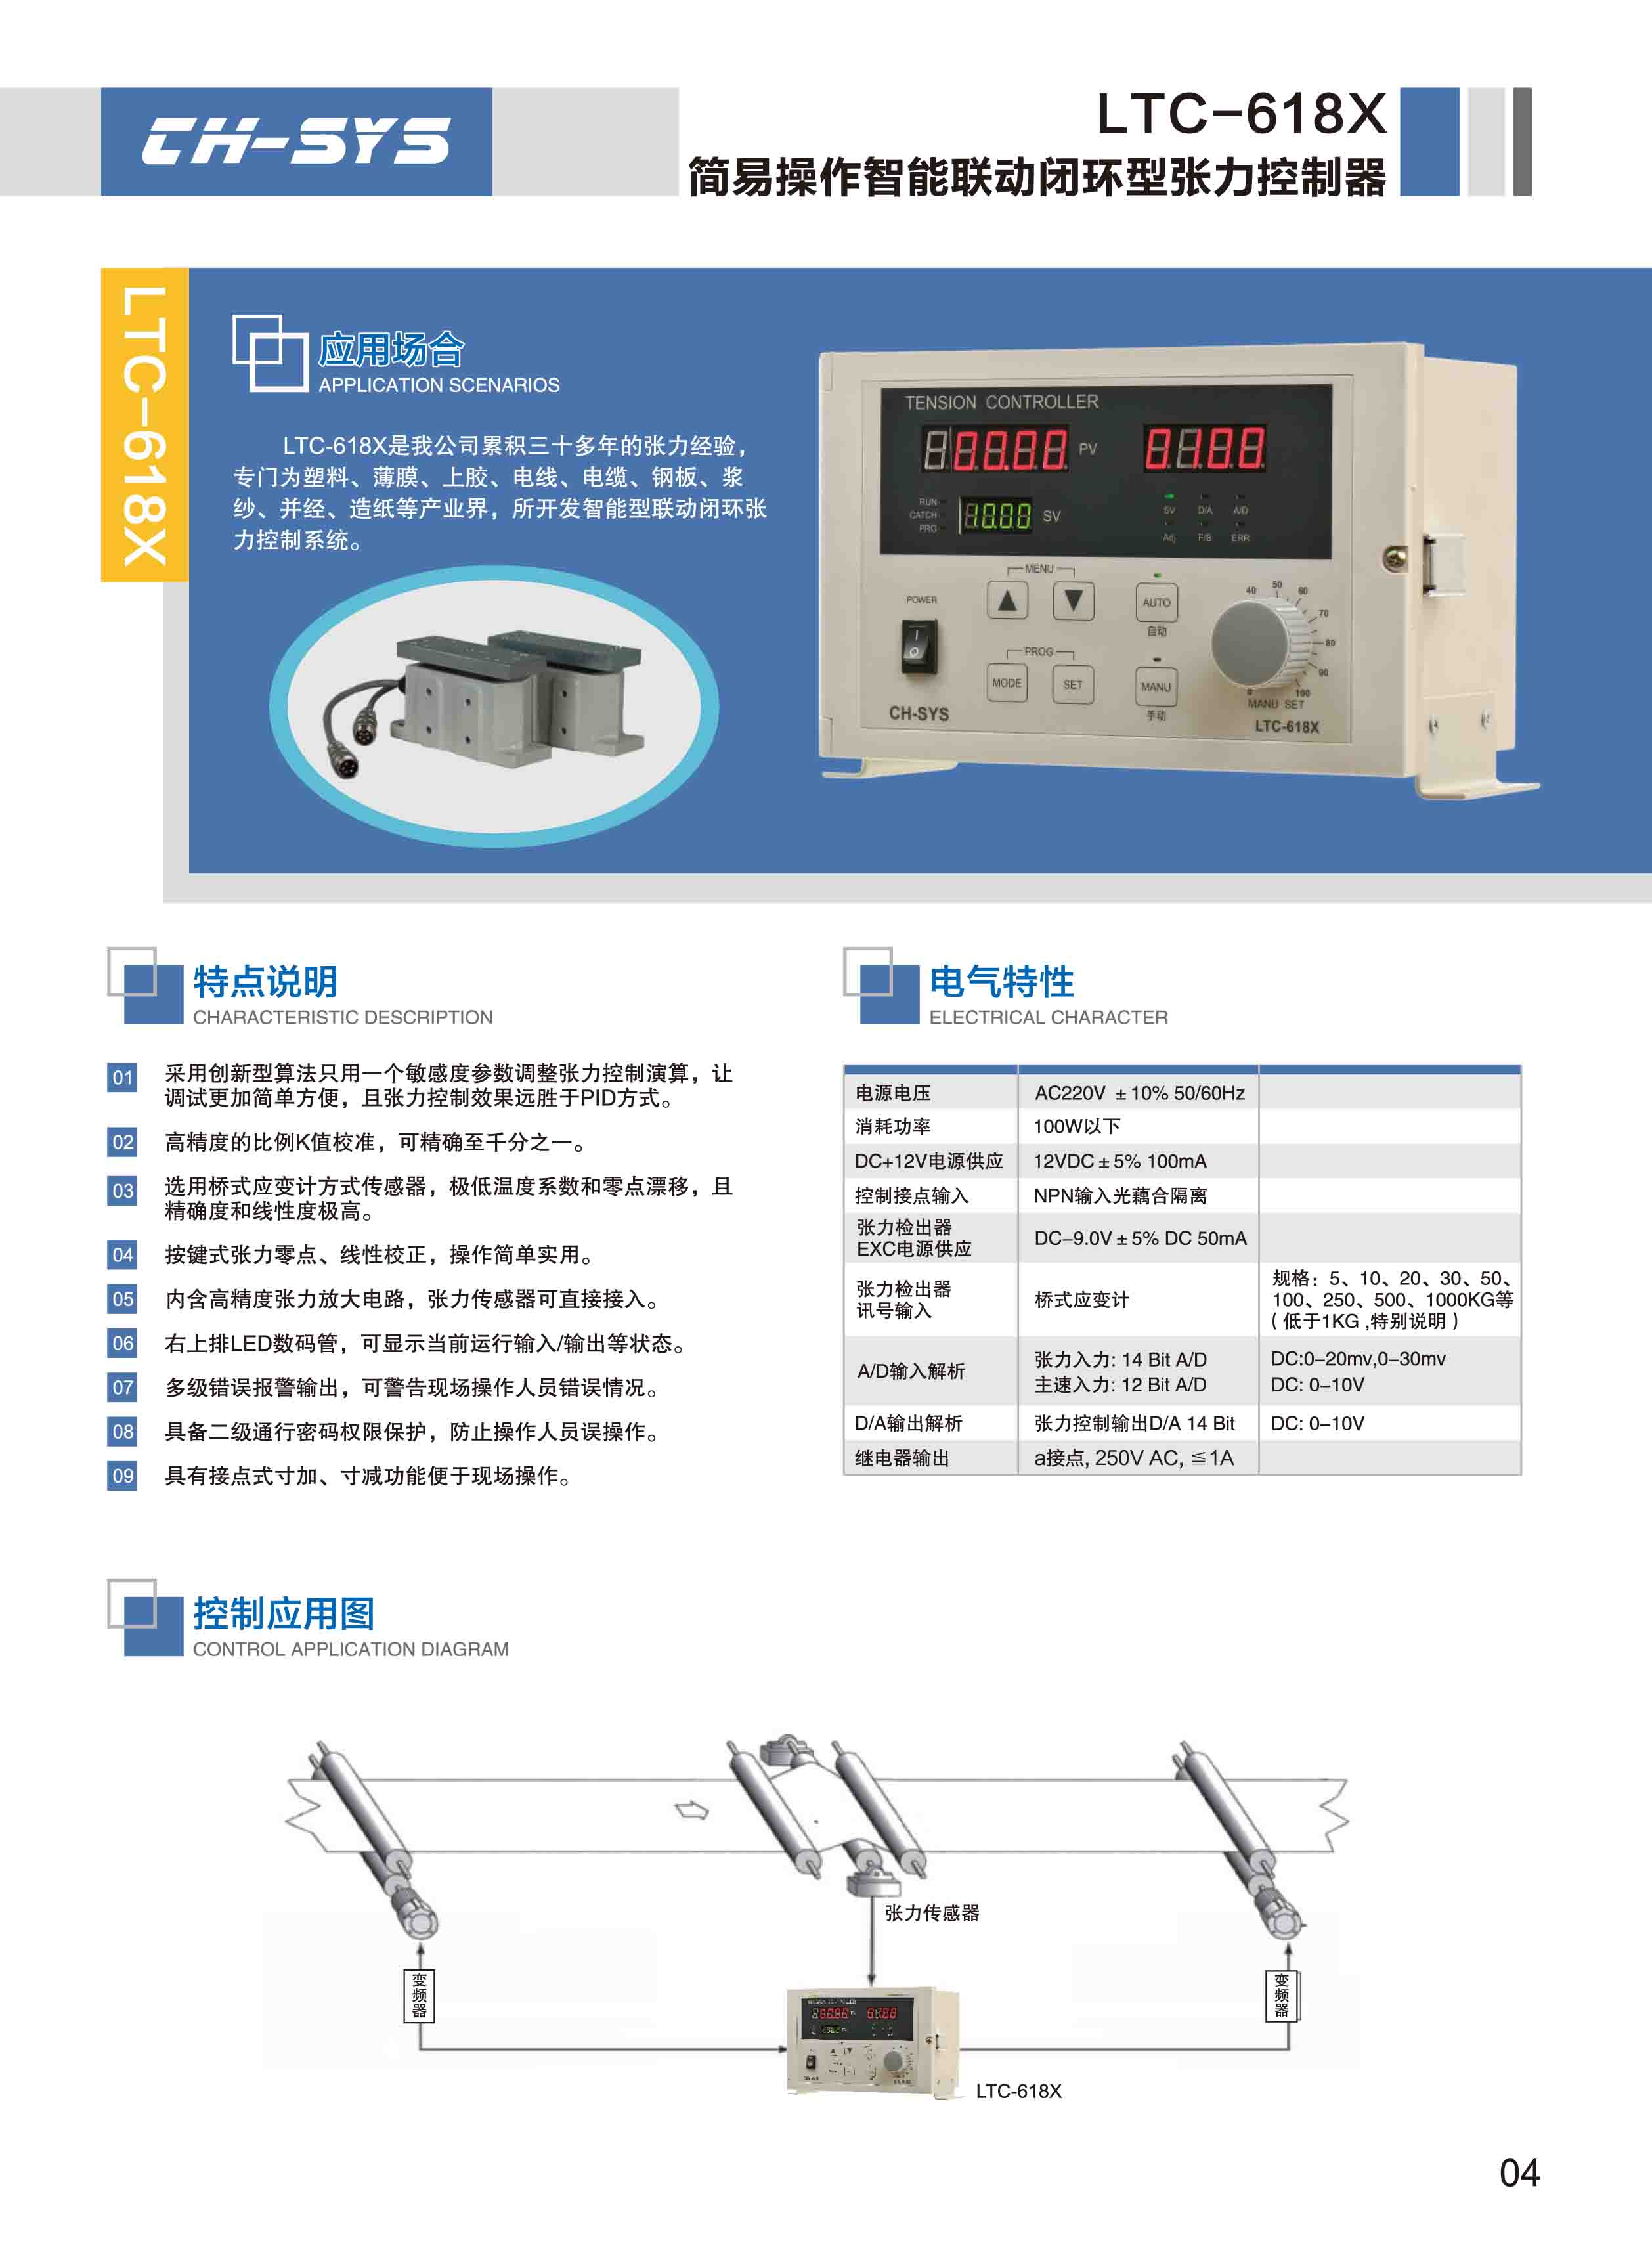 台湾企宏全自动张力控制器TC-6068F 张力控制器,TC-6068F,控制器,TC-6168F,TC-618F